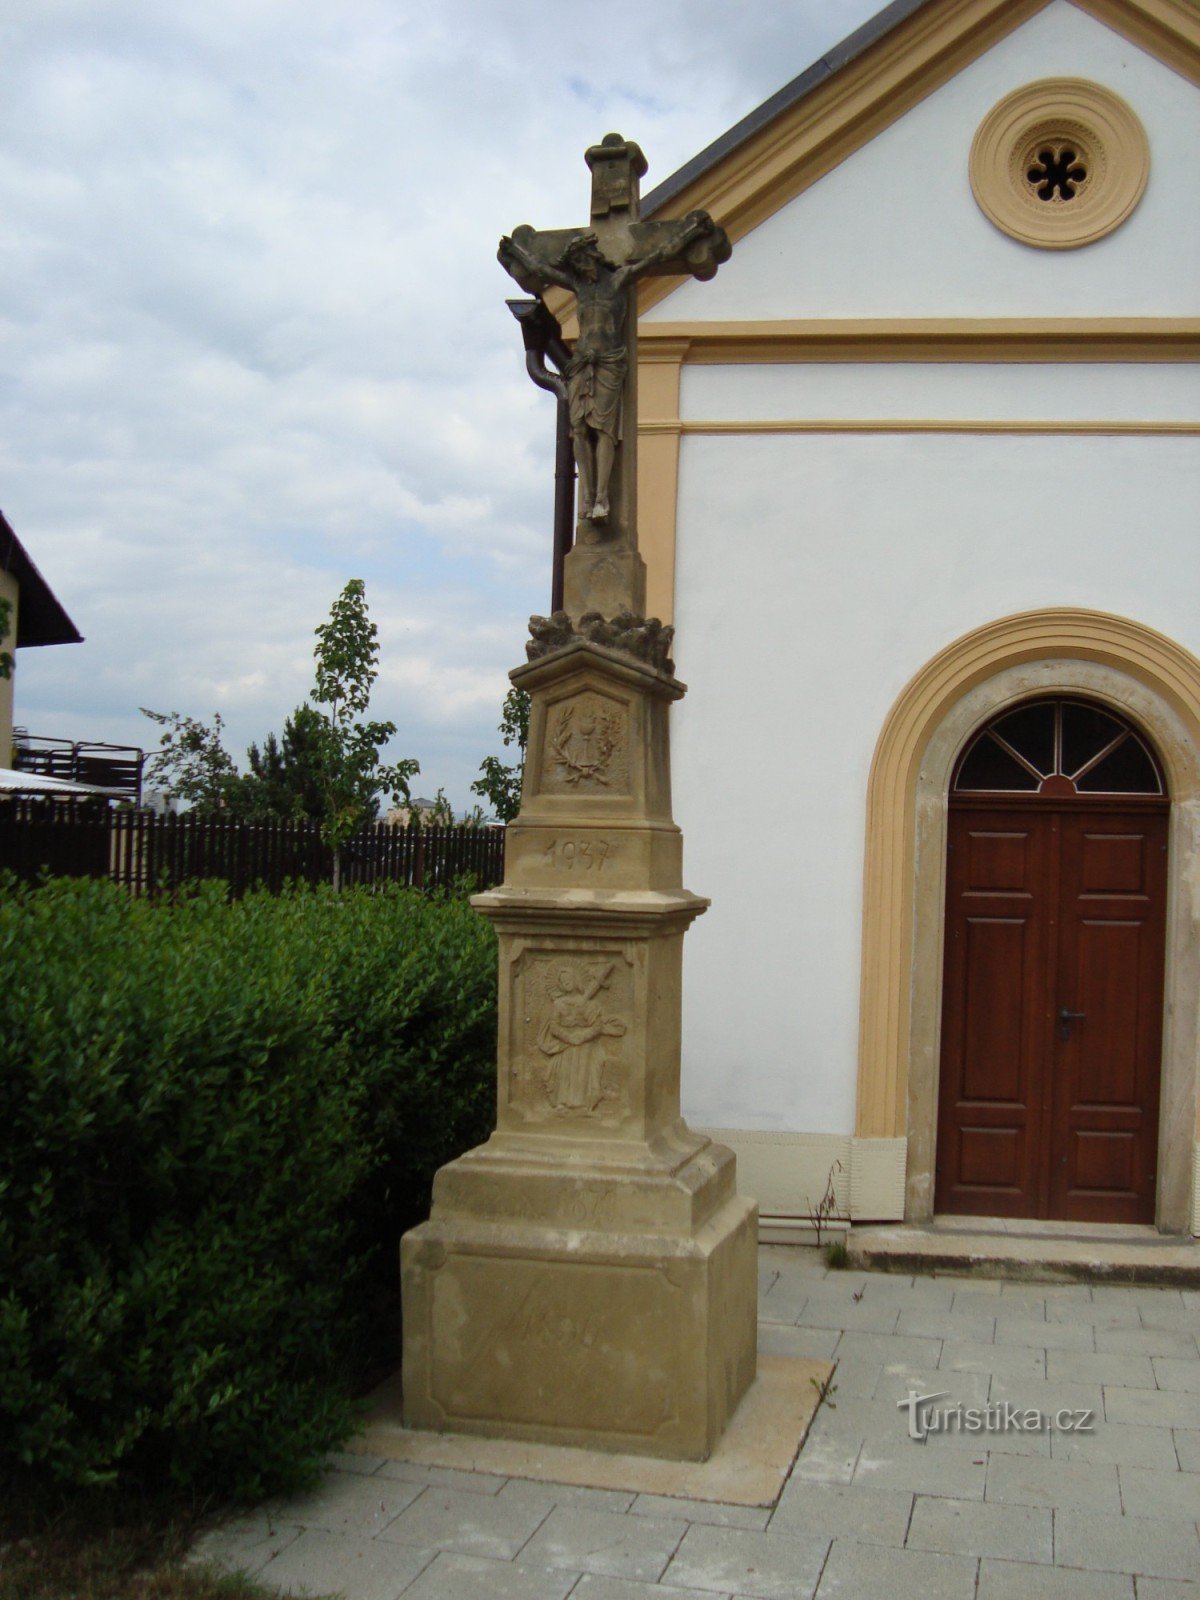 Slavonín-Kyselov-kapel van St. Johannes de Doper uit 1875 en stenen kruis uit 1836 - Foto: Ulrych Mir.